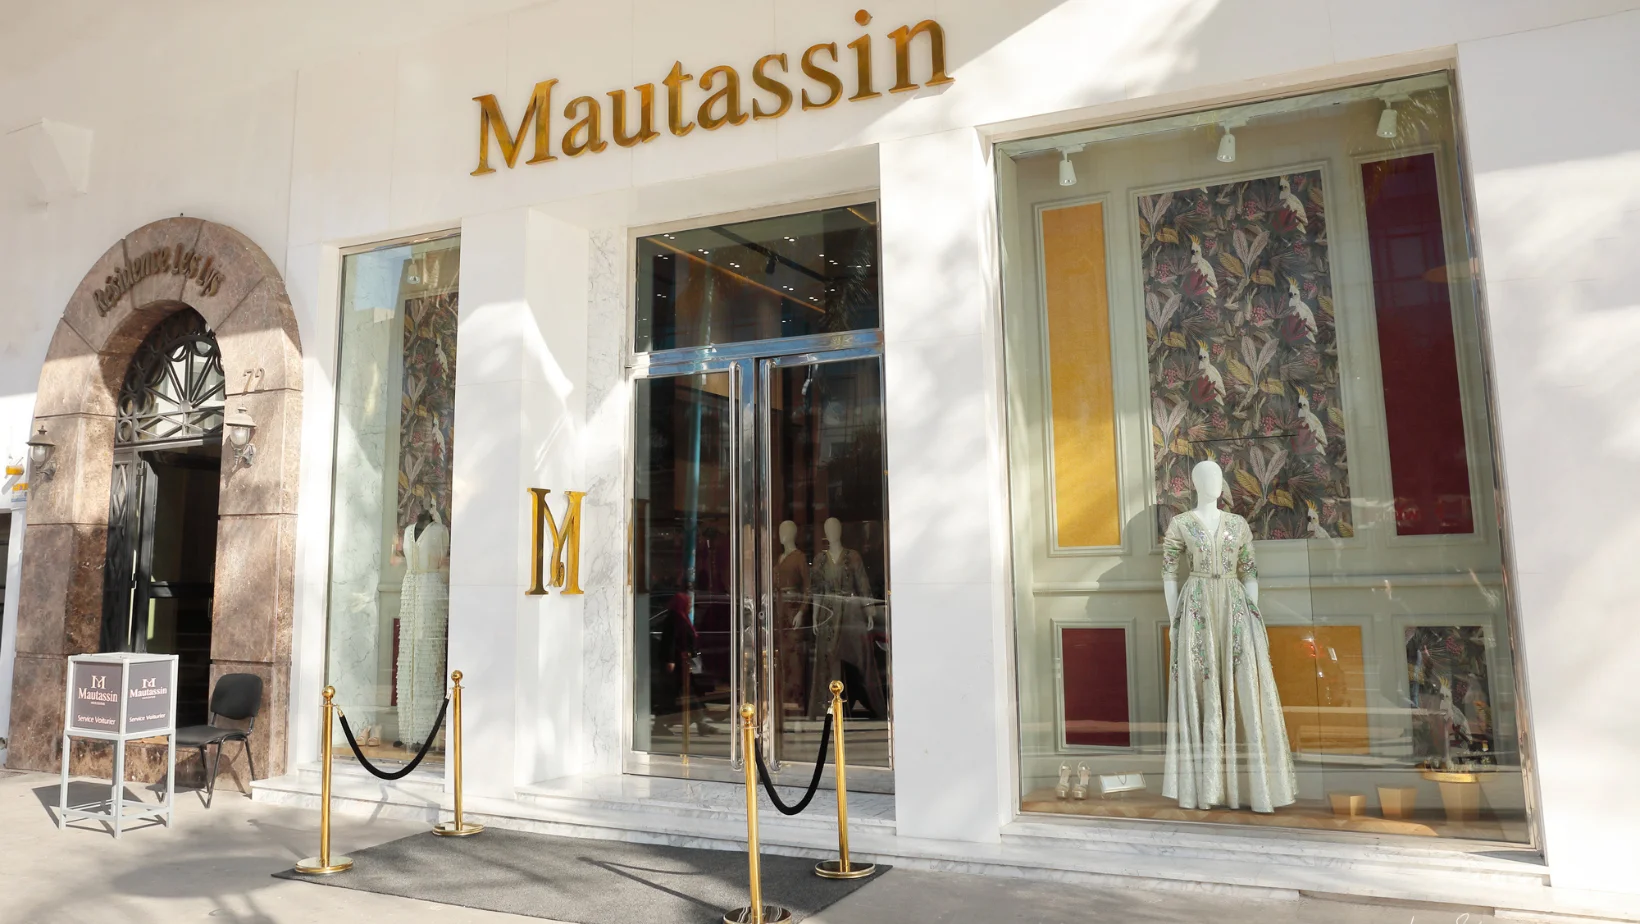 Showroom Mautassin, boulevard El massira,Casablanca